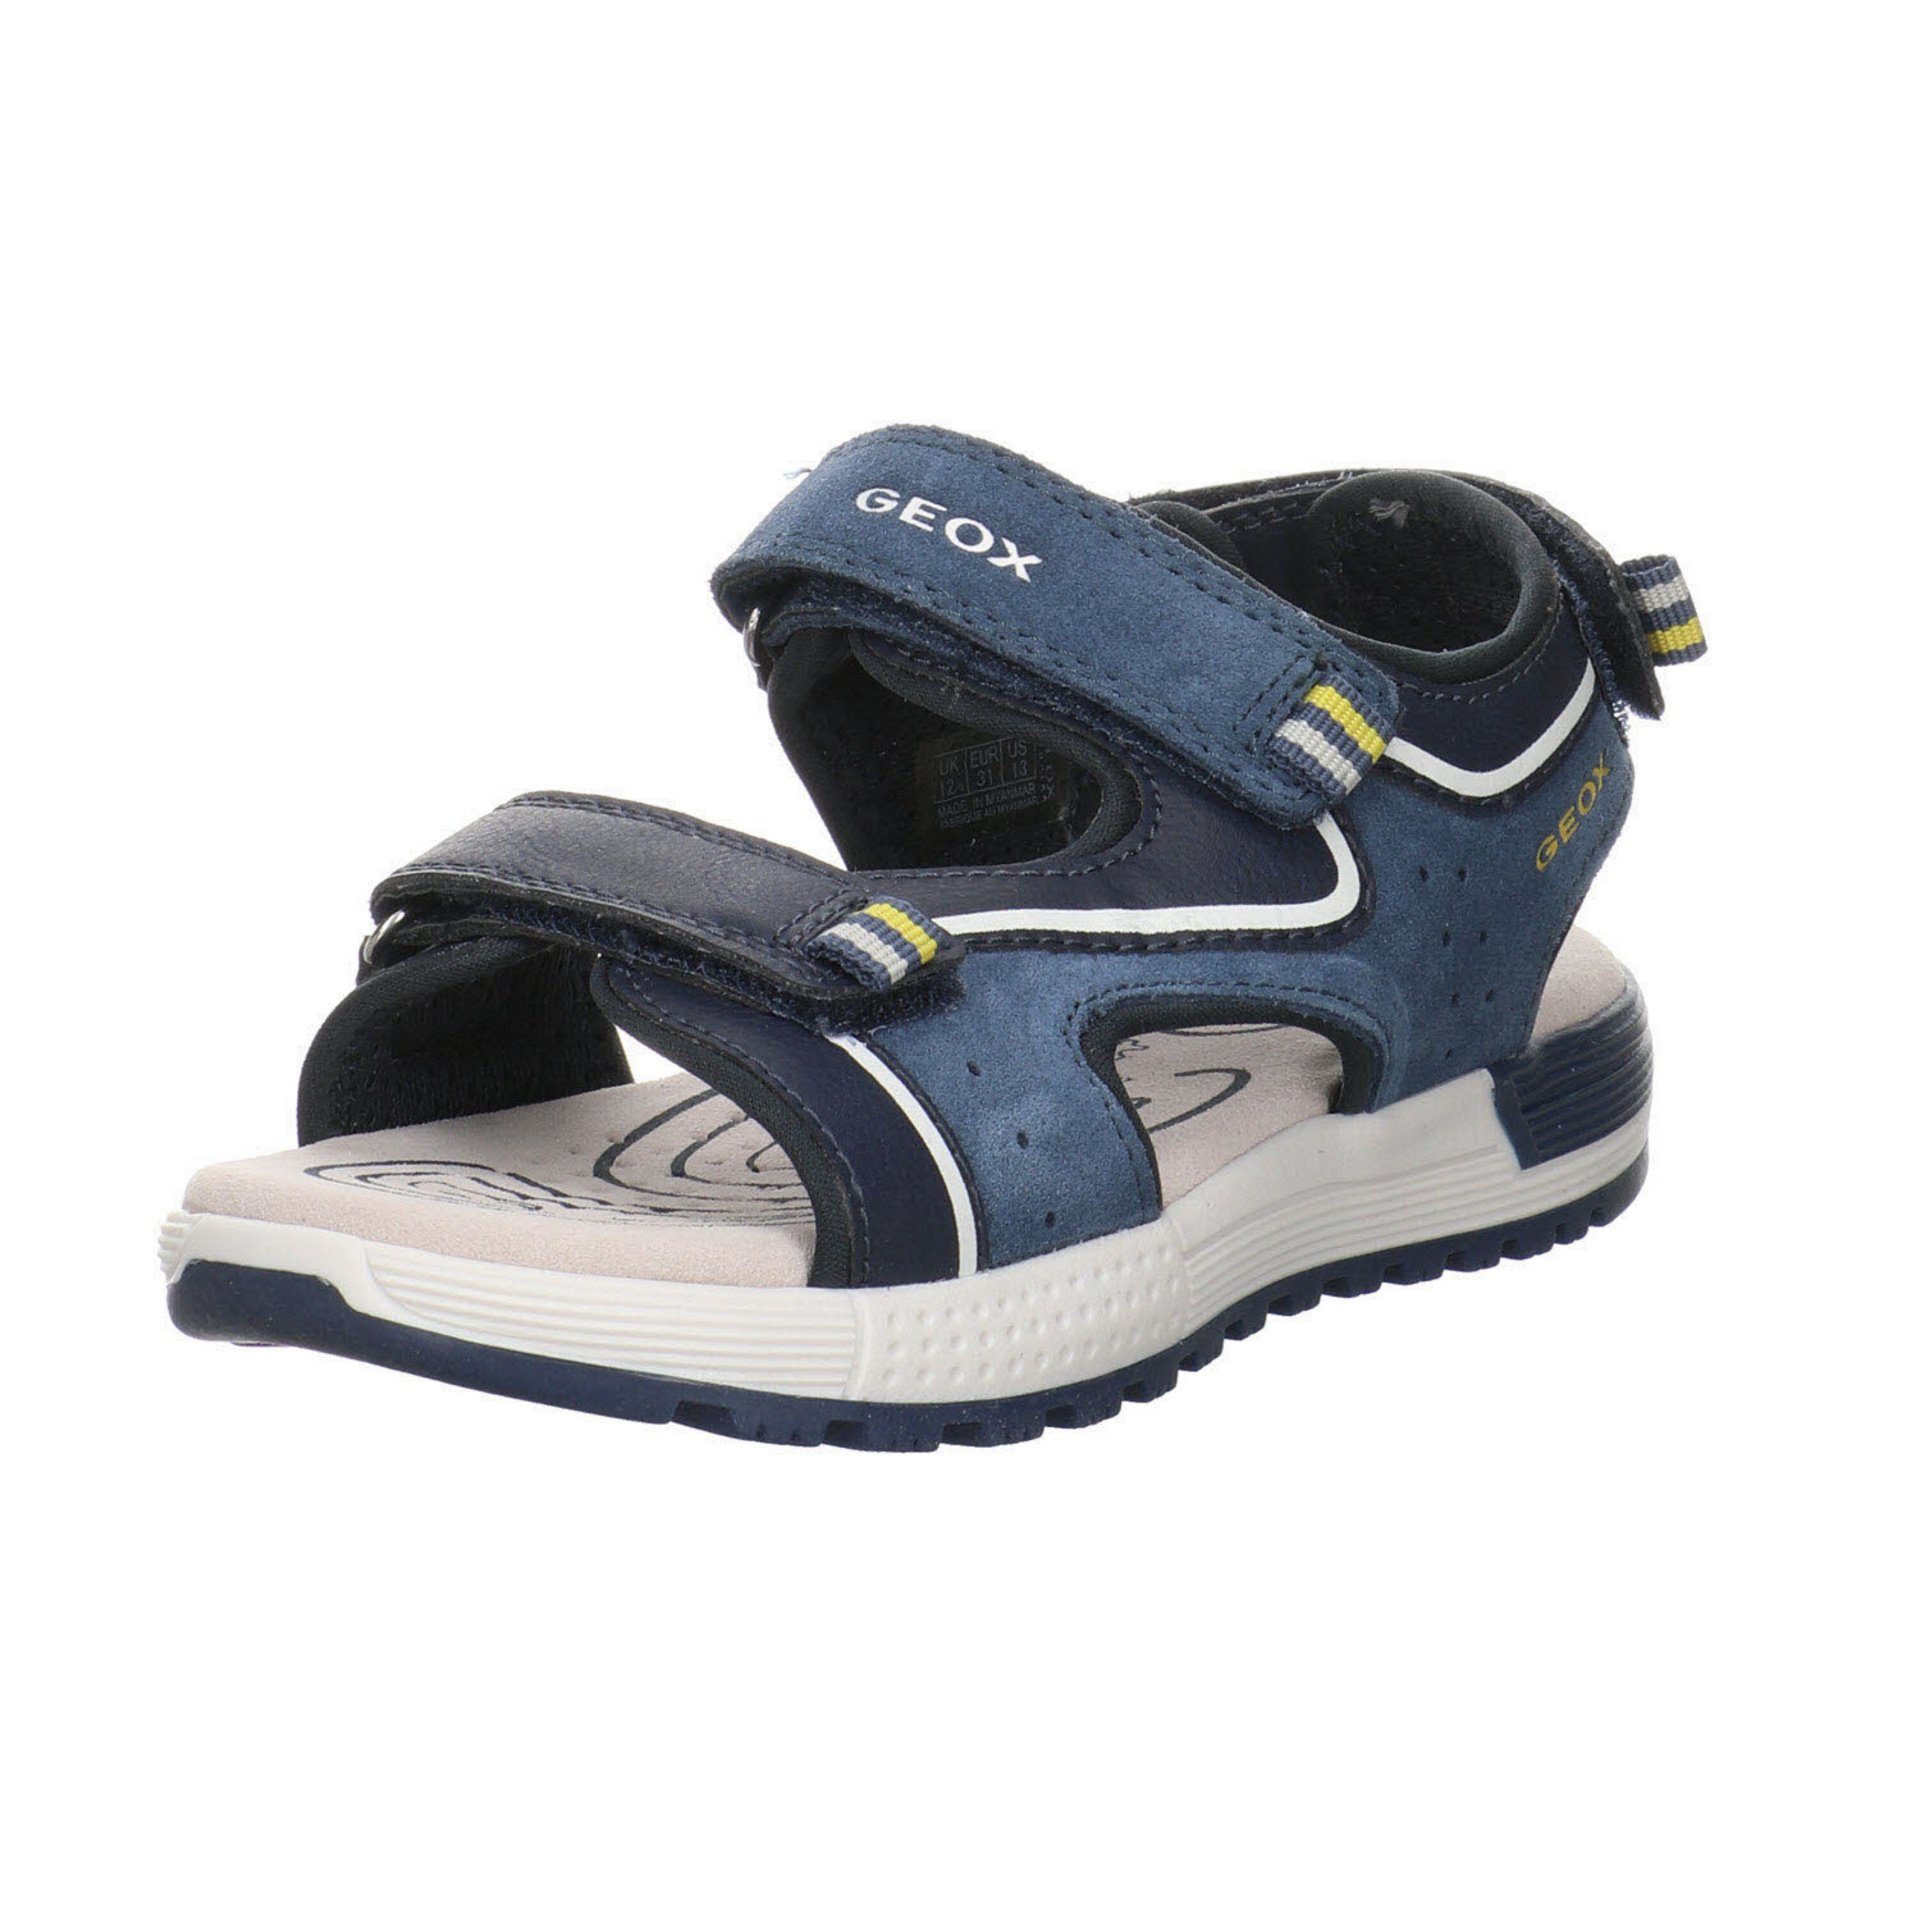 Geox »Jungen Sandalen Schuhe Alben Sandale Kinderschuhe« Sandale  Leder-/Textilkombination online kaufen | OTTO